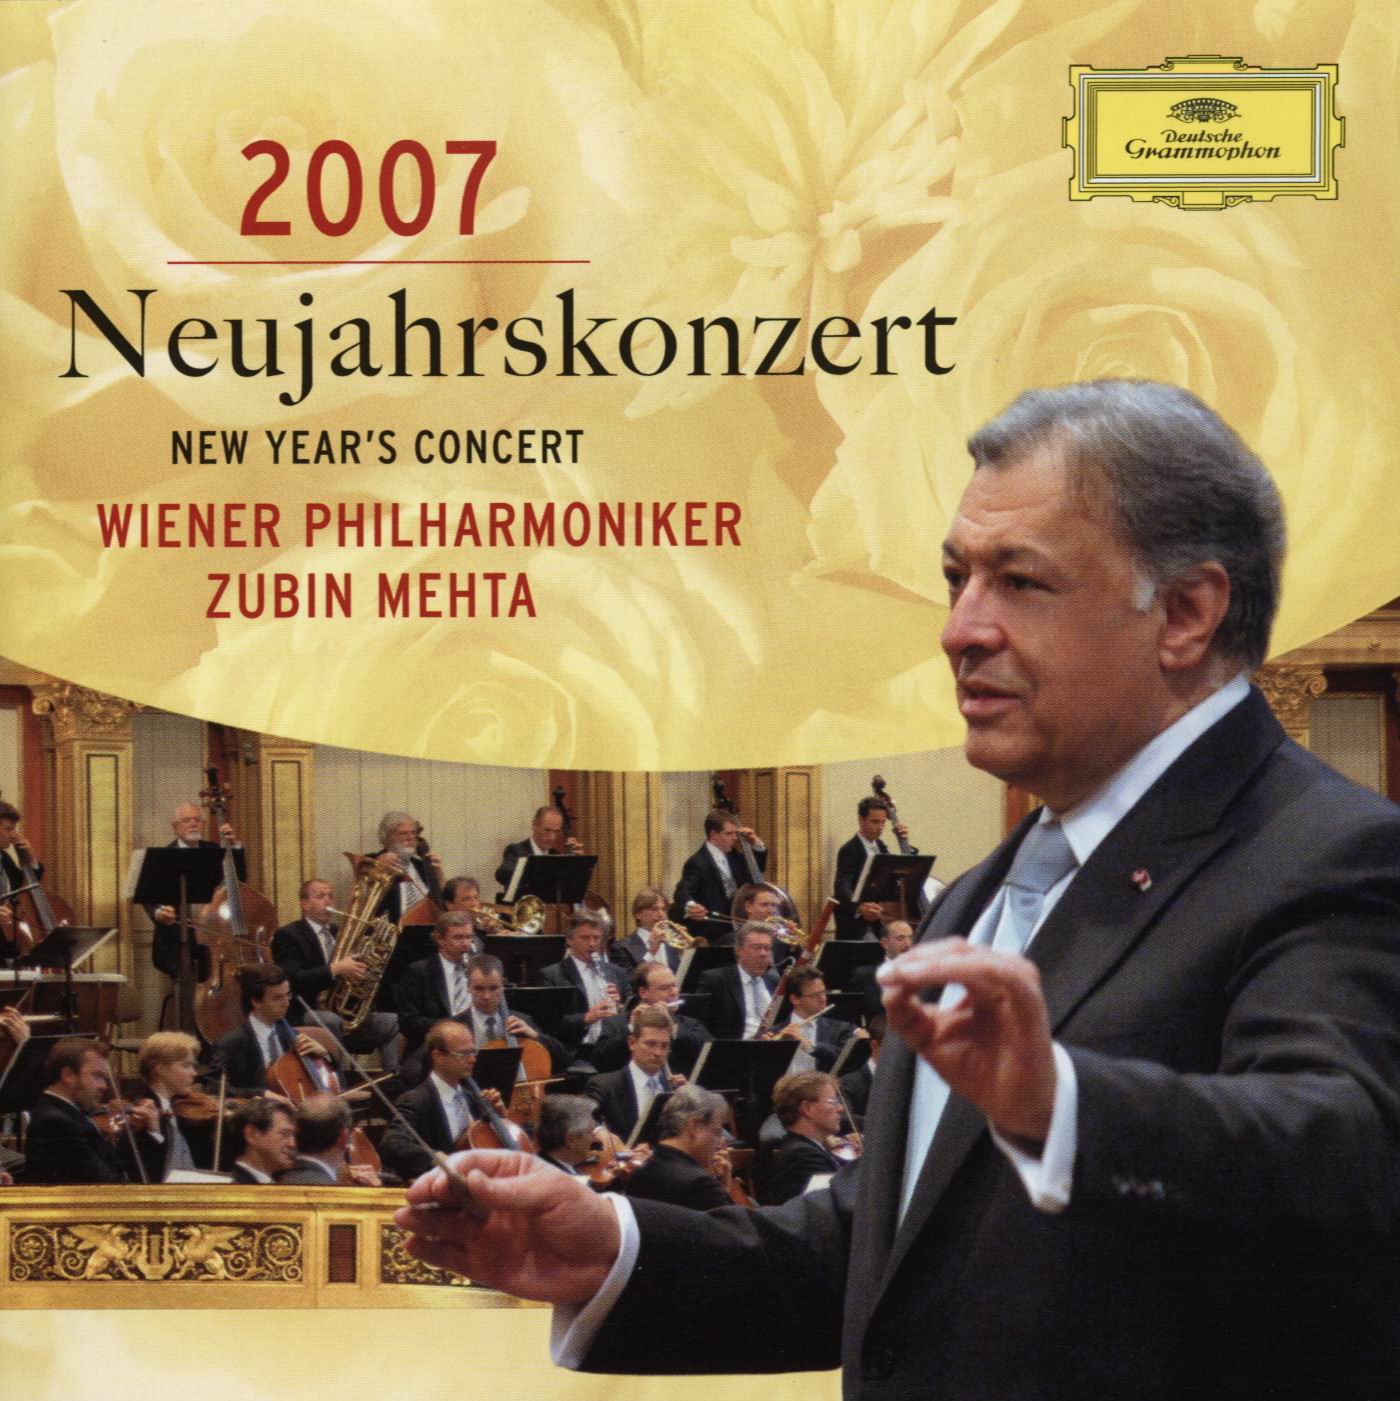 New Year's Concert 2007 - Zubin Mehta